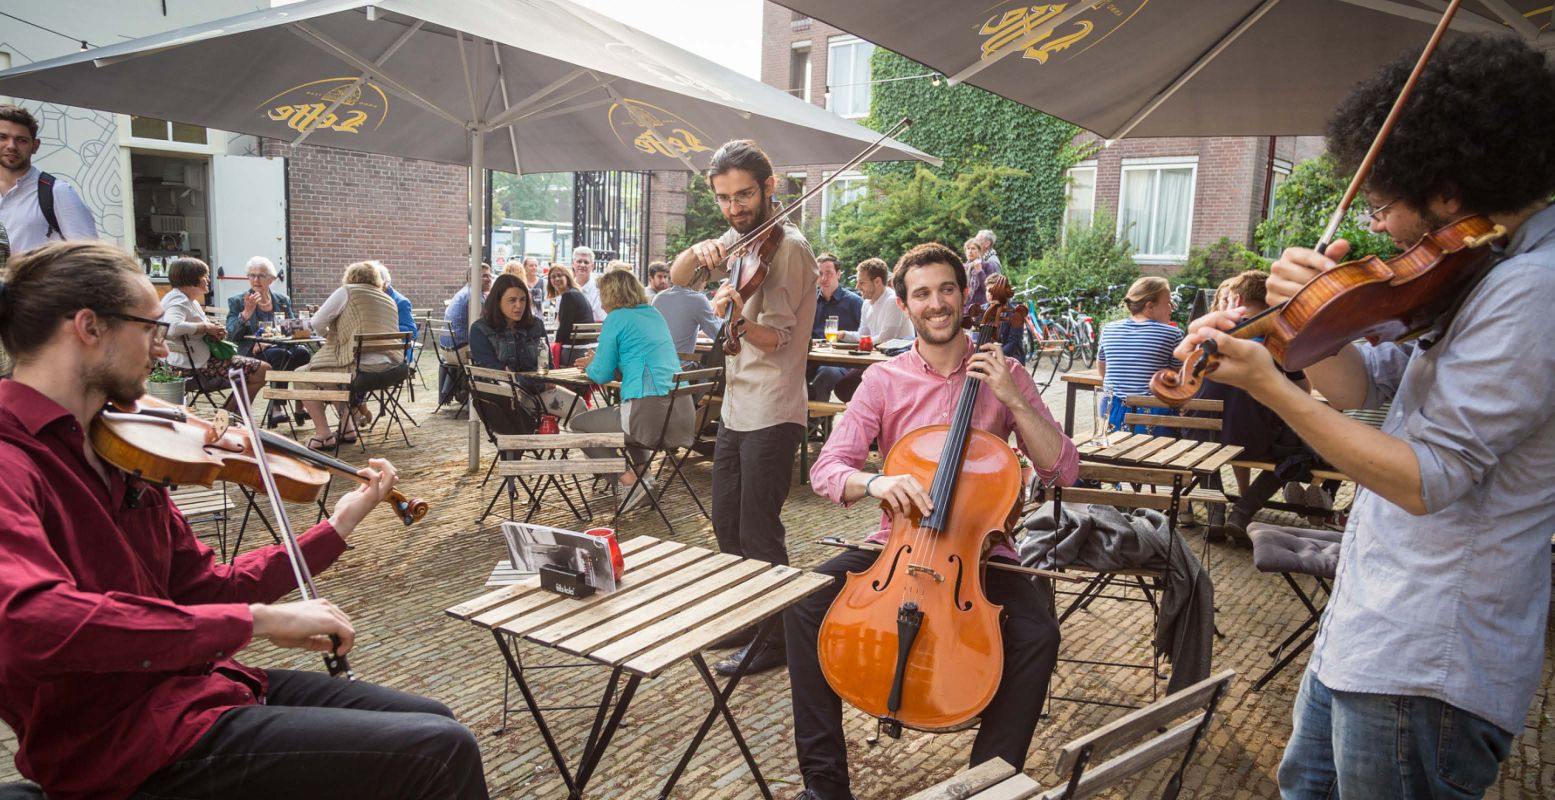 Delft wordt overspoeld door kunst, cultuur en muziek. Foto: Karym Ahmed